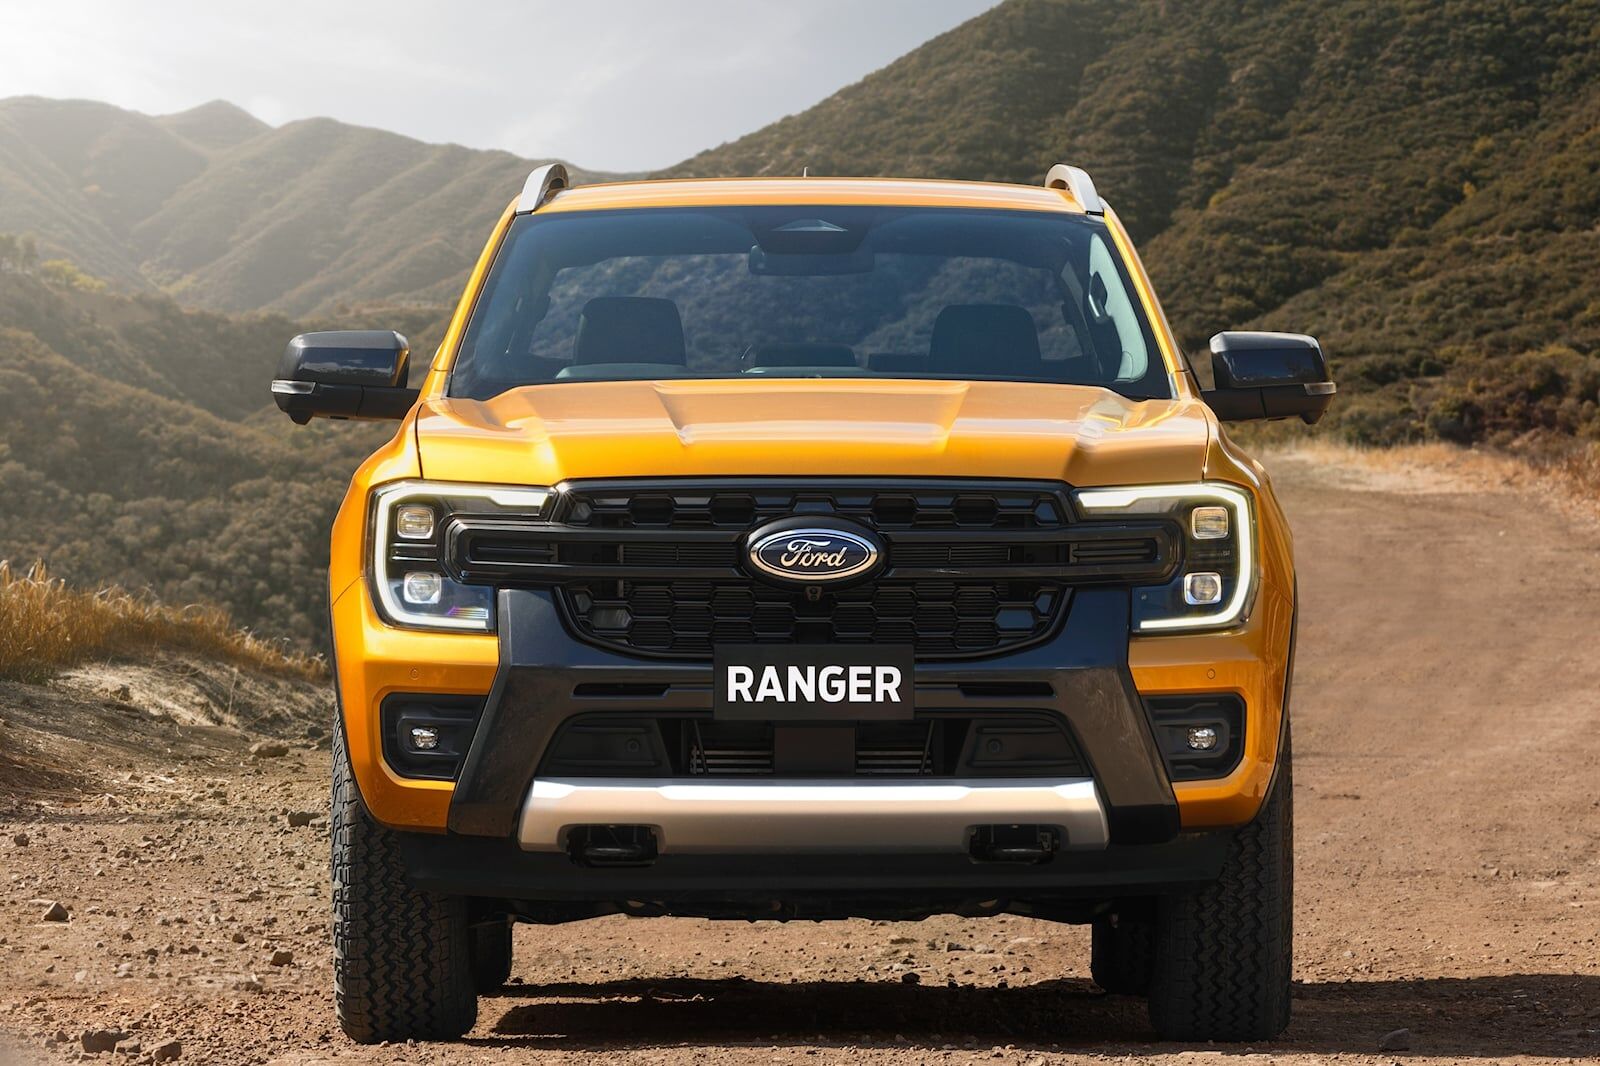 Thiết kế Ford Ranger được đánh giá cao